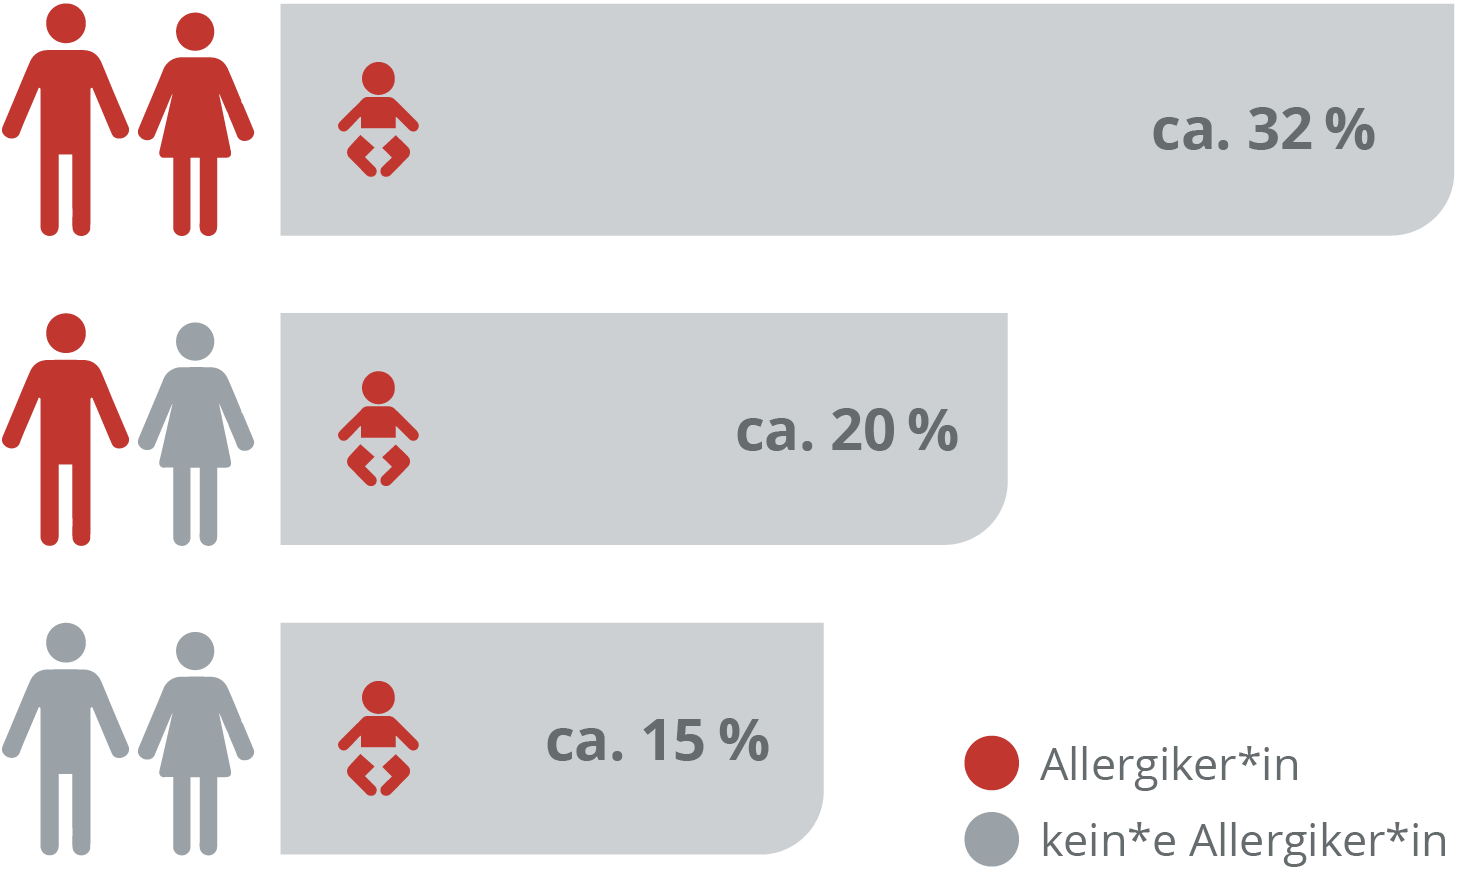 Kinder von Allergikern haben ein erhöhtes Allergierisiko 